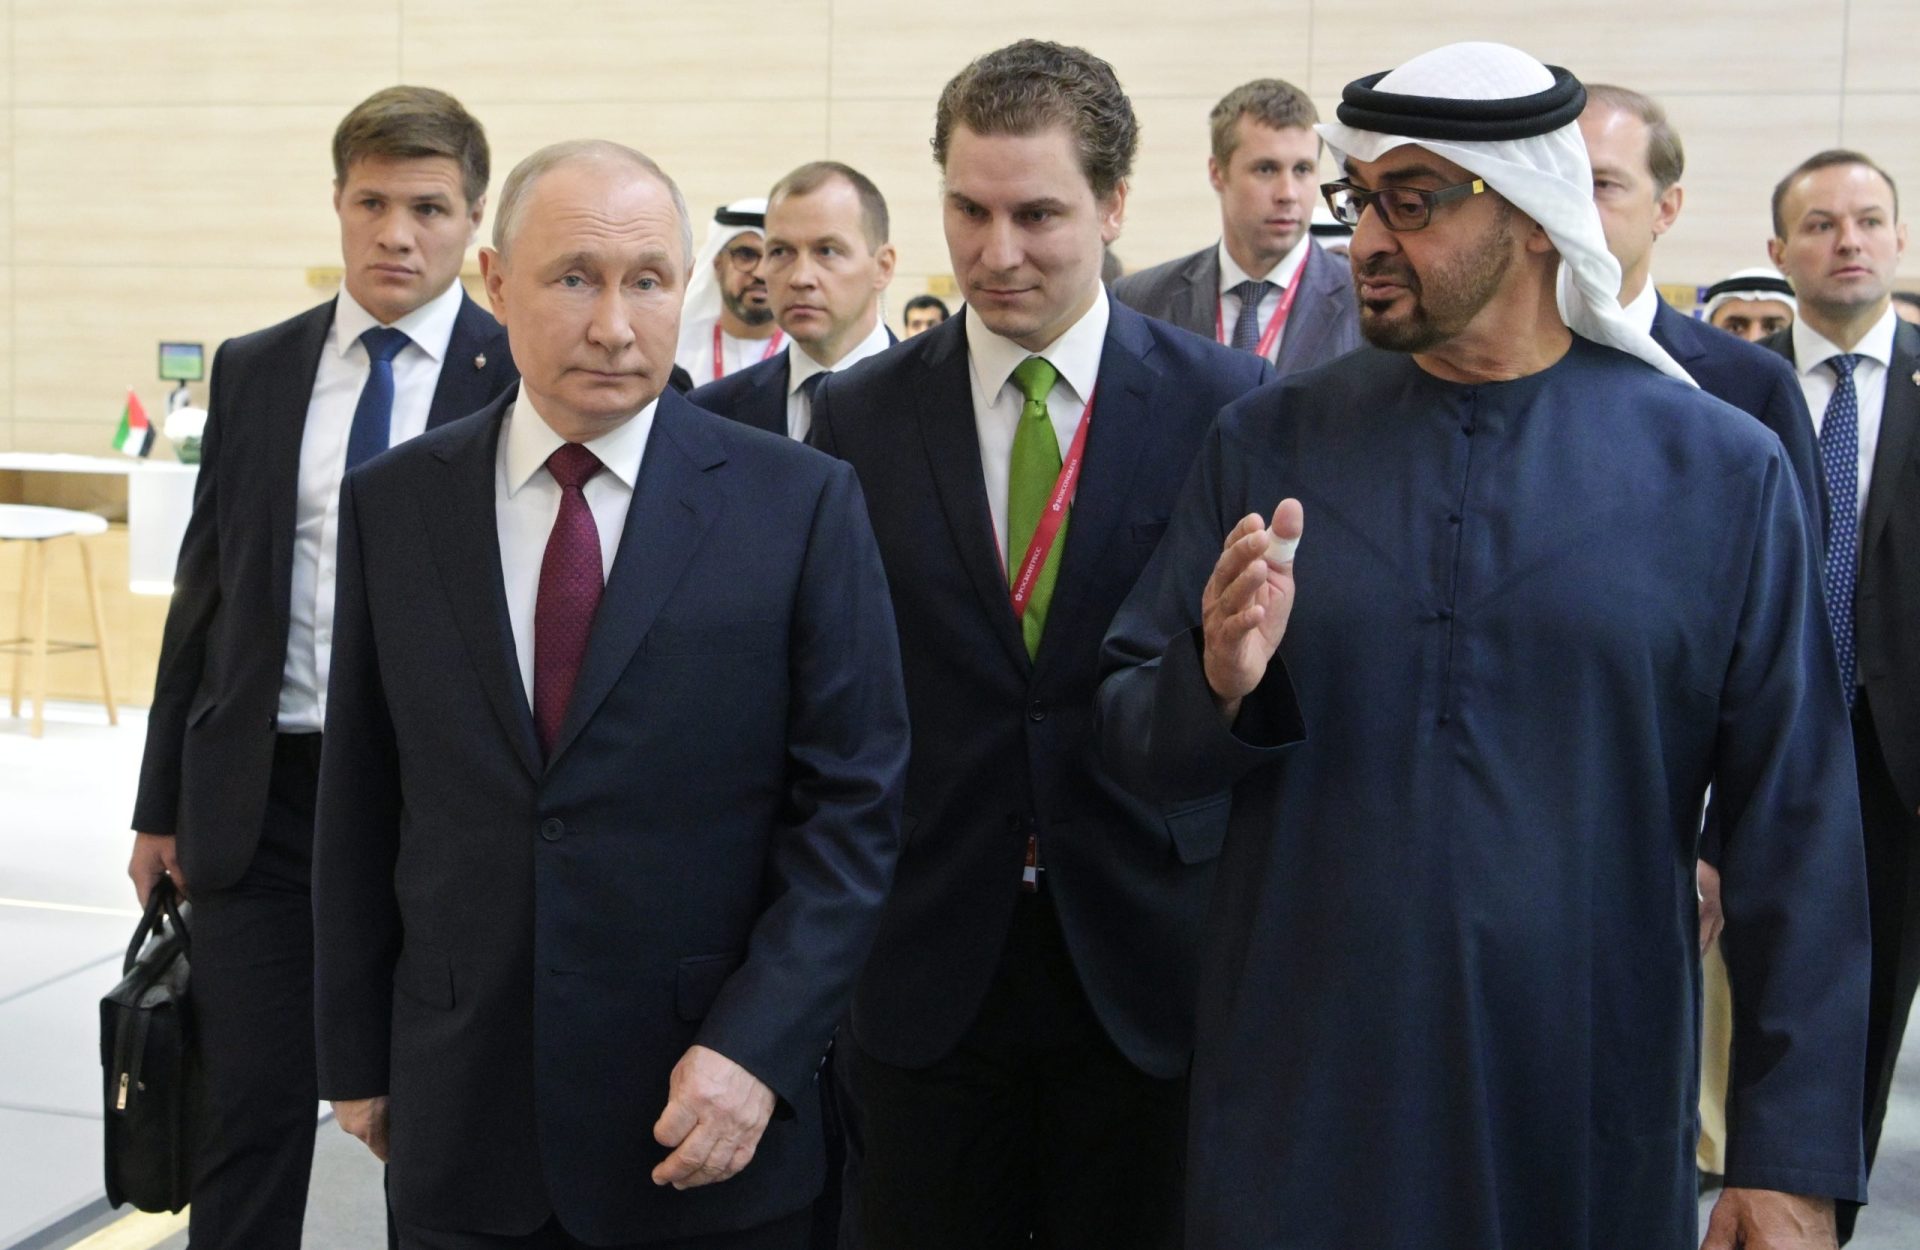 Les EAU nuiront-elles à la Russie pour plaire aux USA?